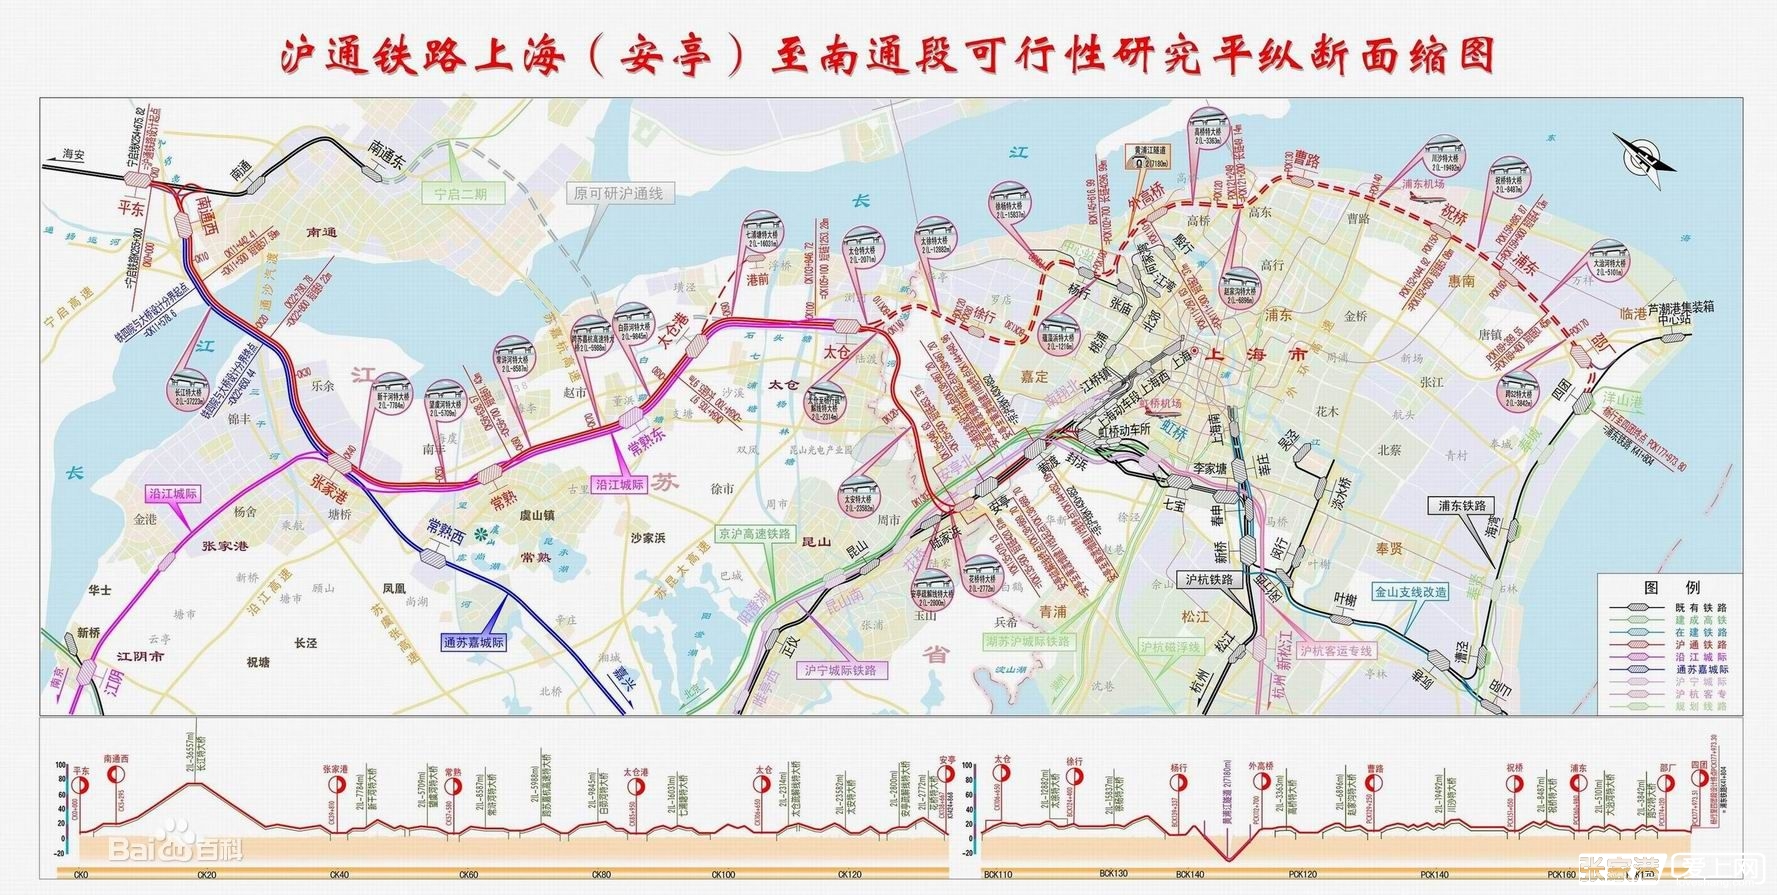 沪通铁路规划图 沪通铁路上海规划图 沪通铁路杨行站图片 959282 7